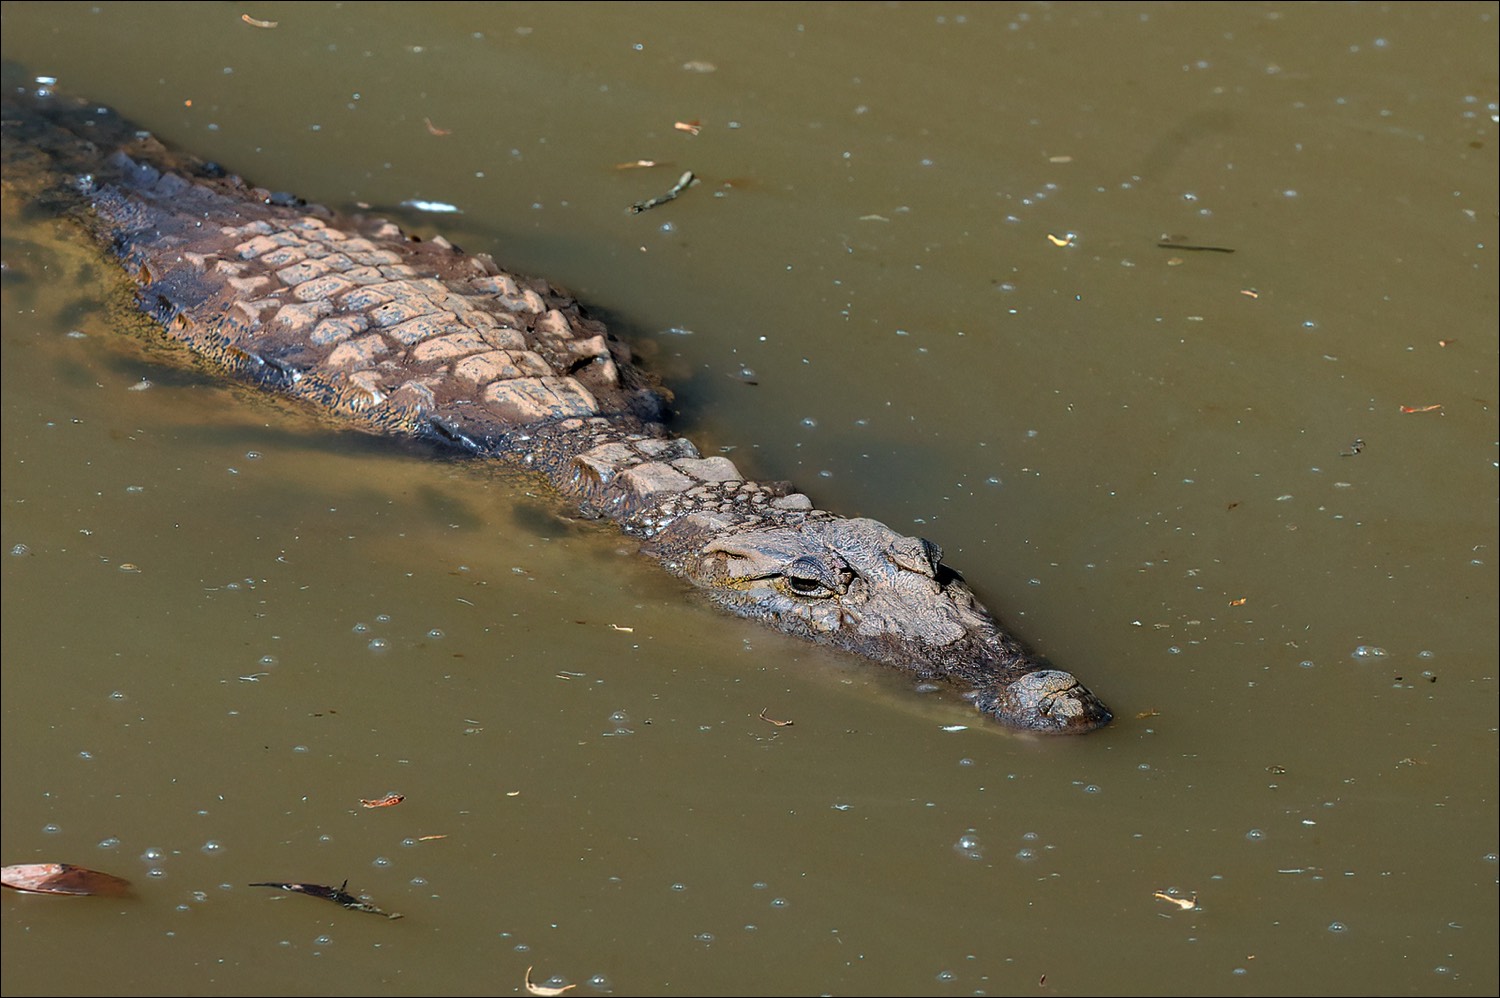 Nile crocodile (Nijlkrokodil)